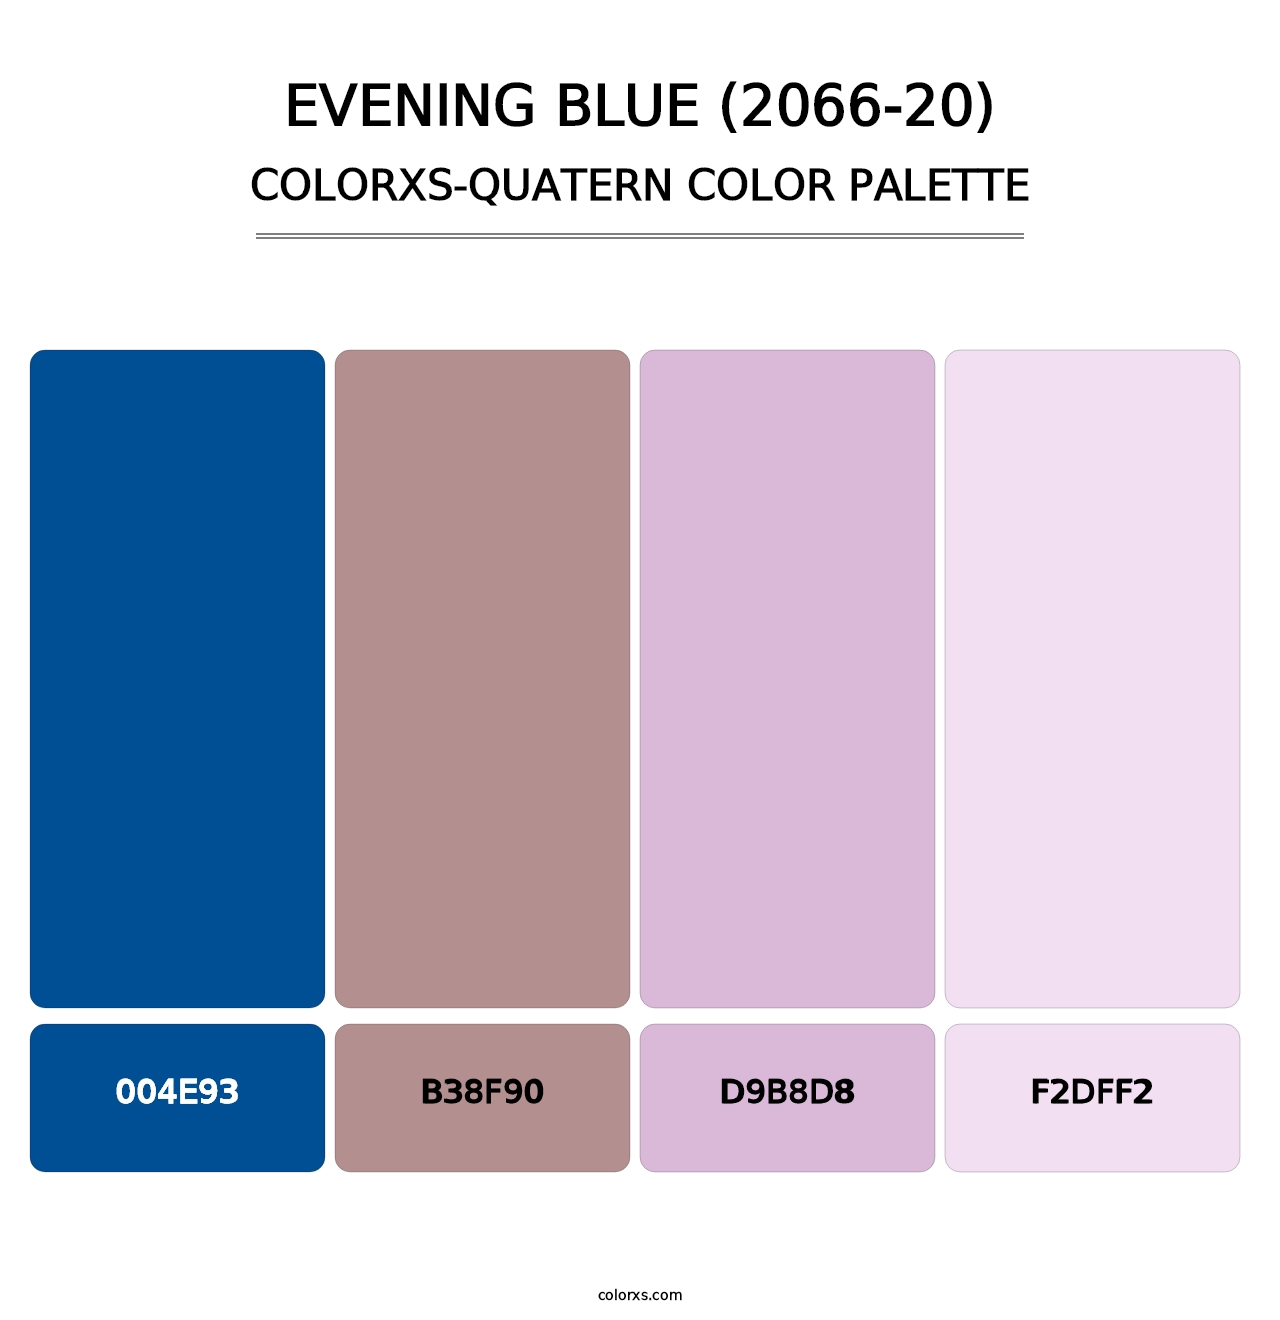 Evening Blue (2066-20) - Colorxs Quatern Palette